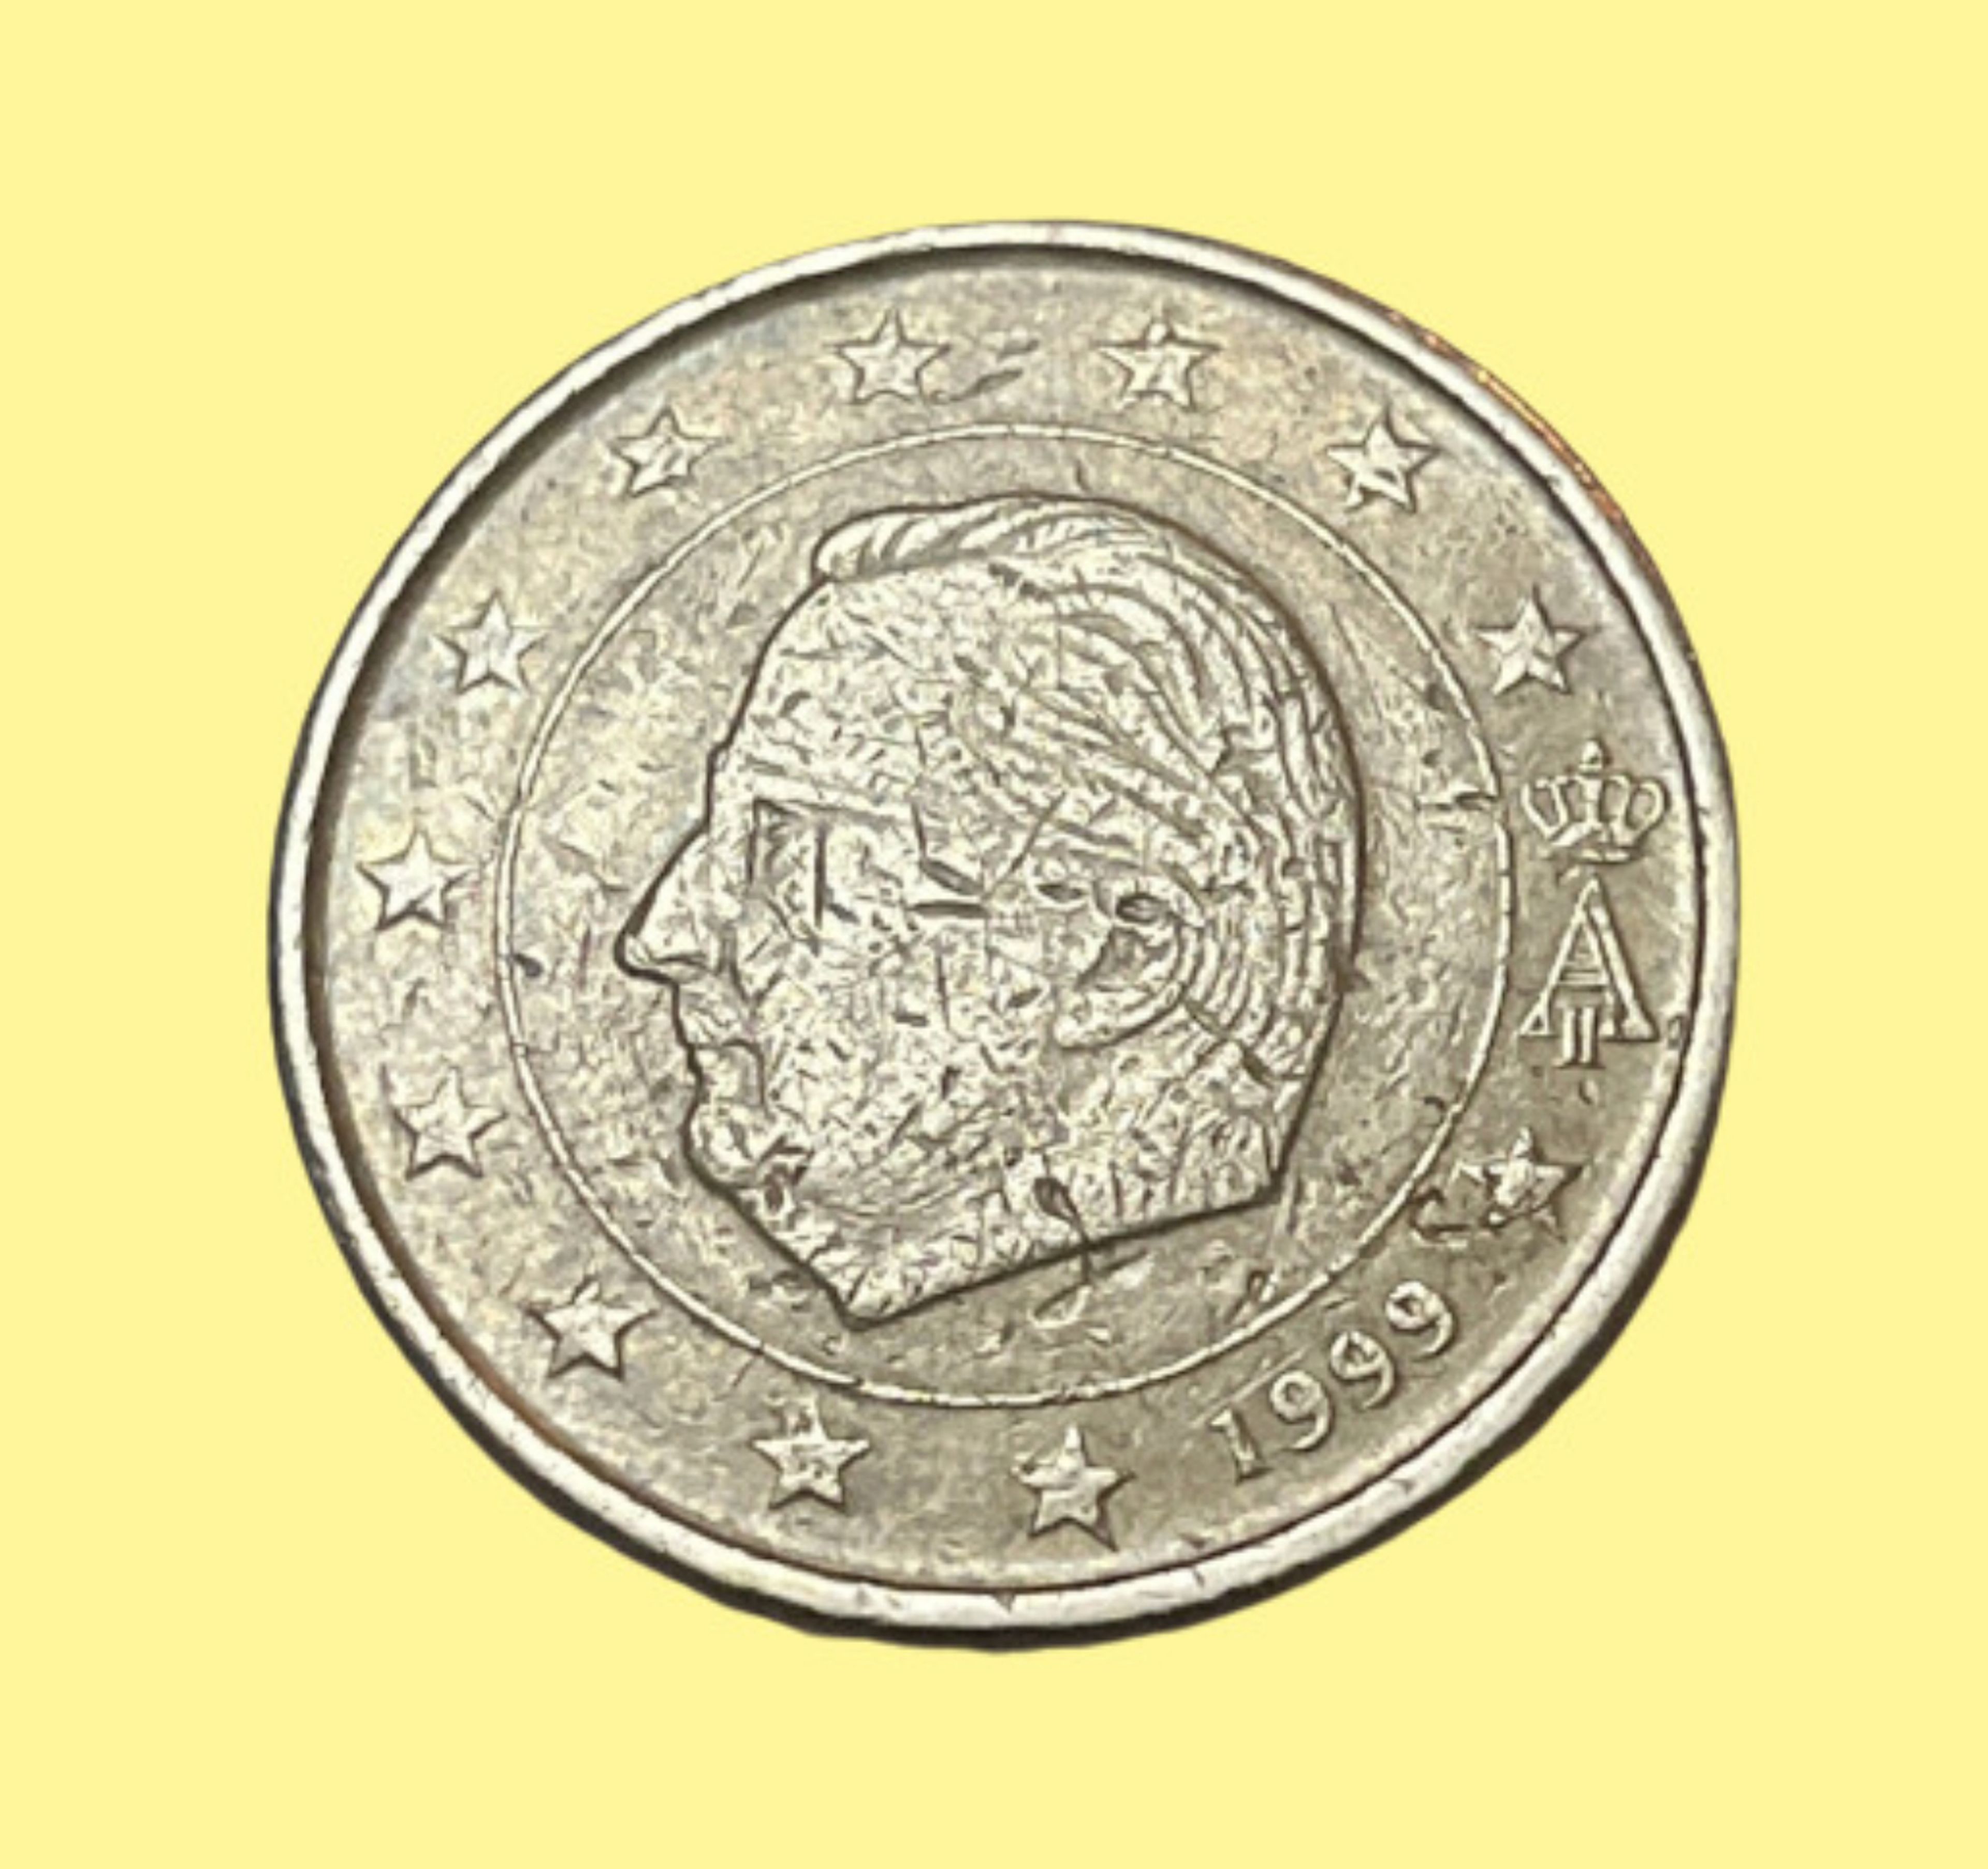 Moneda de 50 céntimos de Bélgica